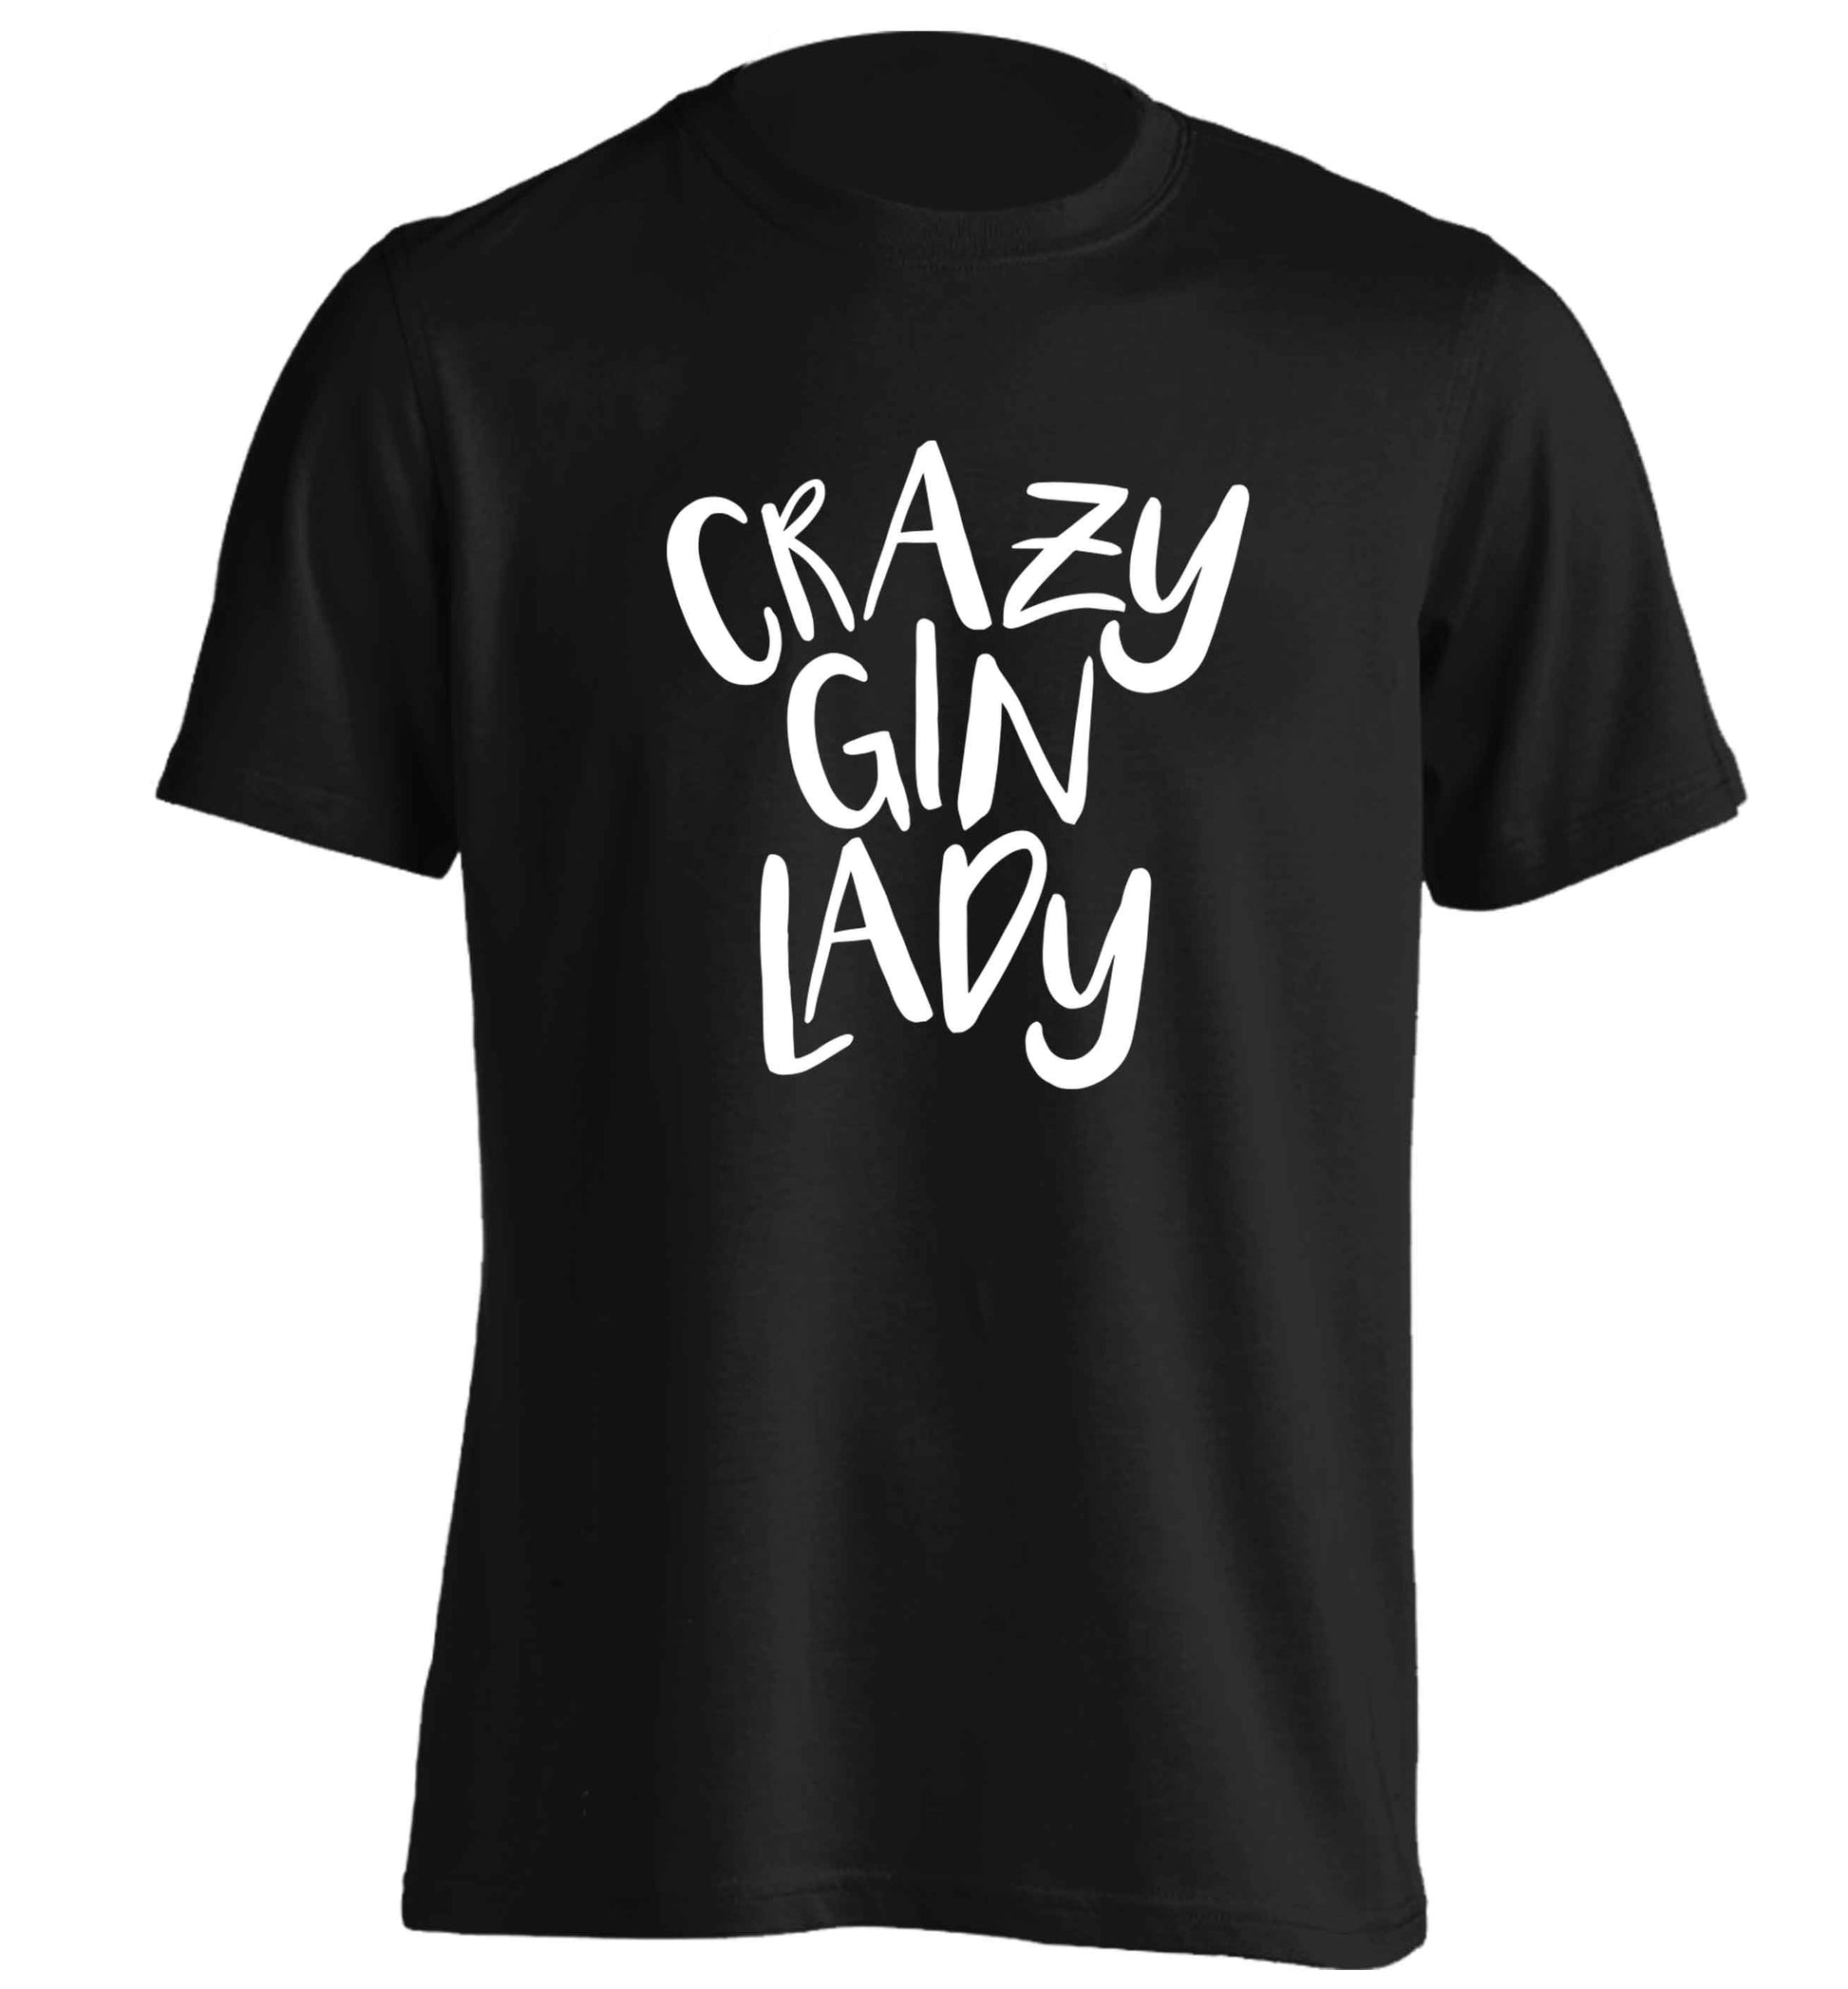 Crazy gin lady adults unisex black Tshirt 2XL